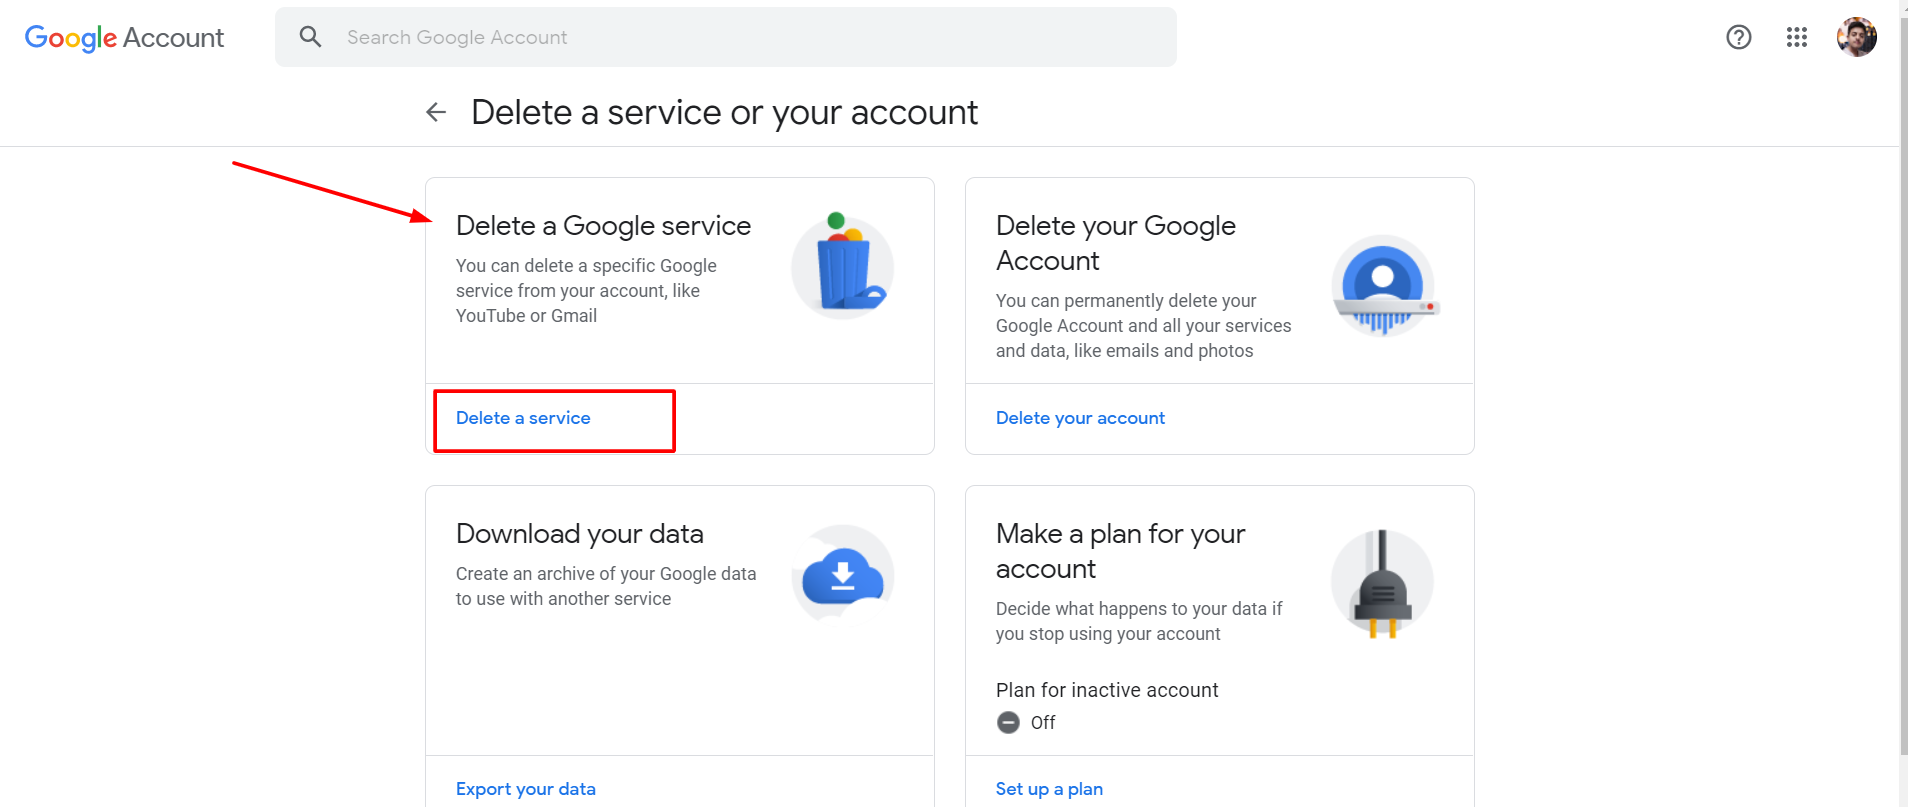 Google account- Delete Google service